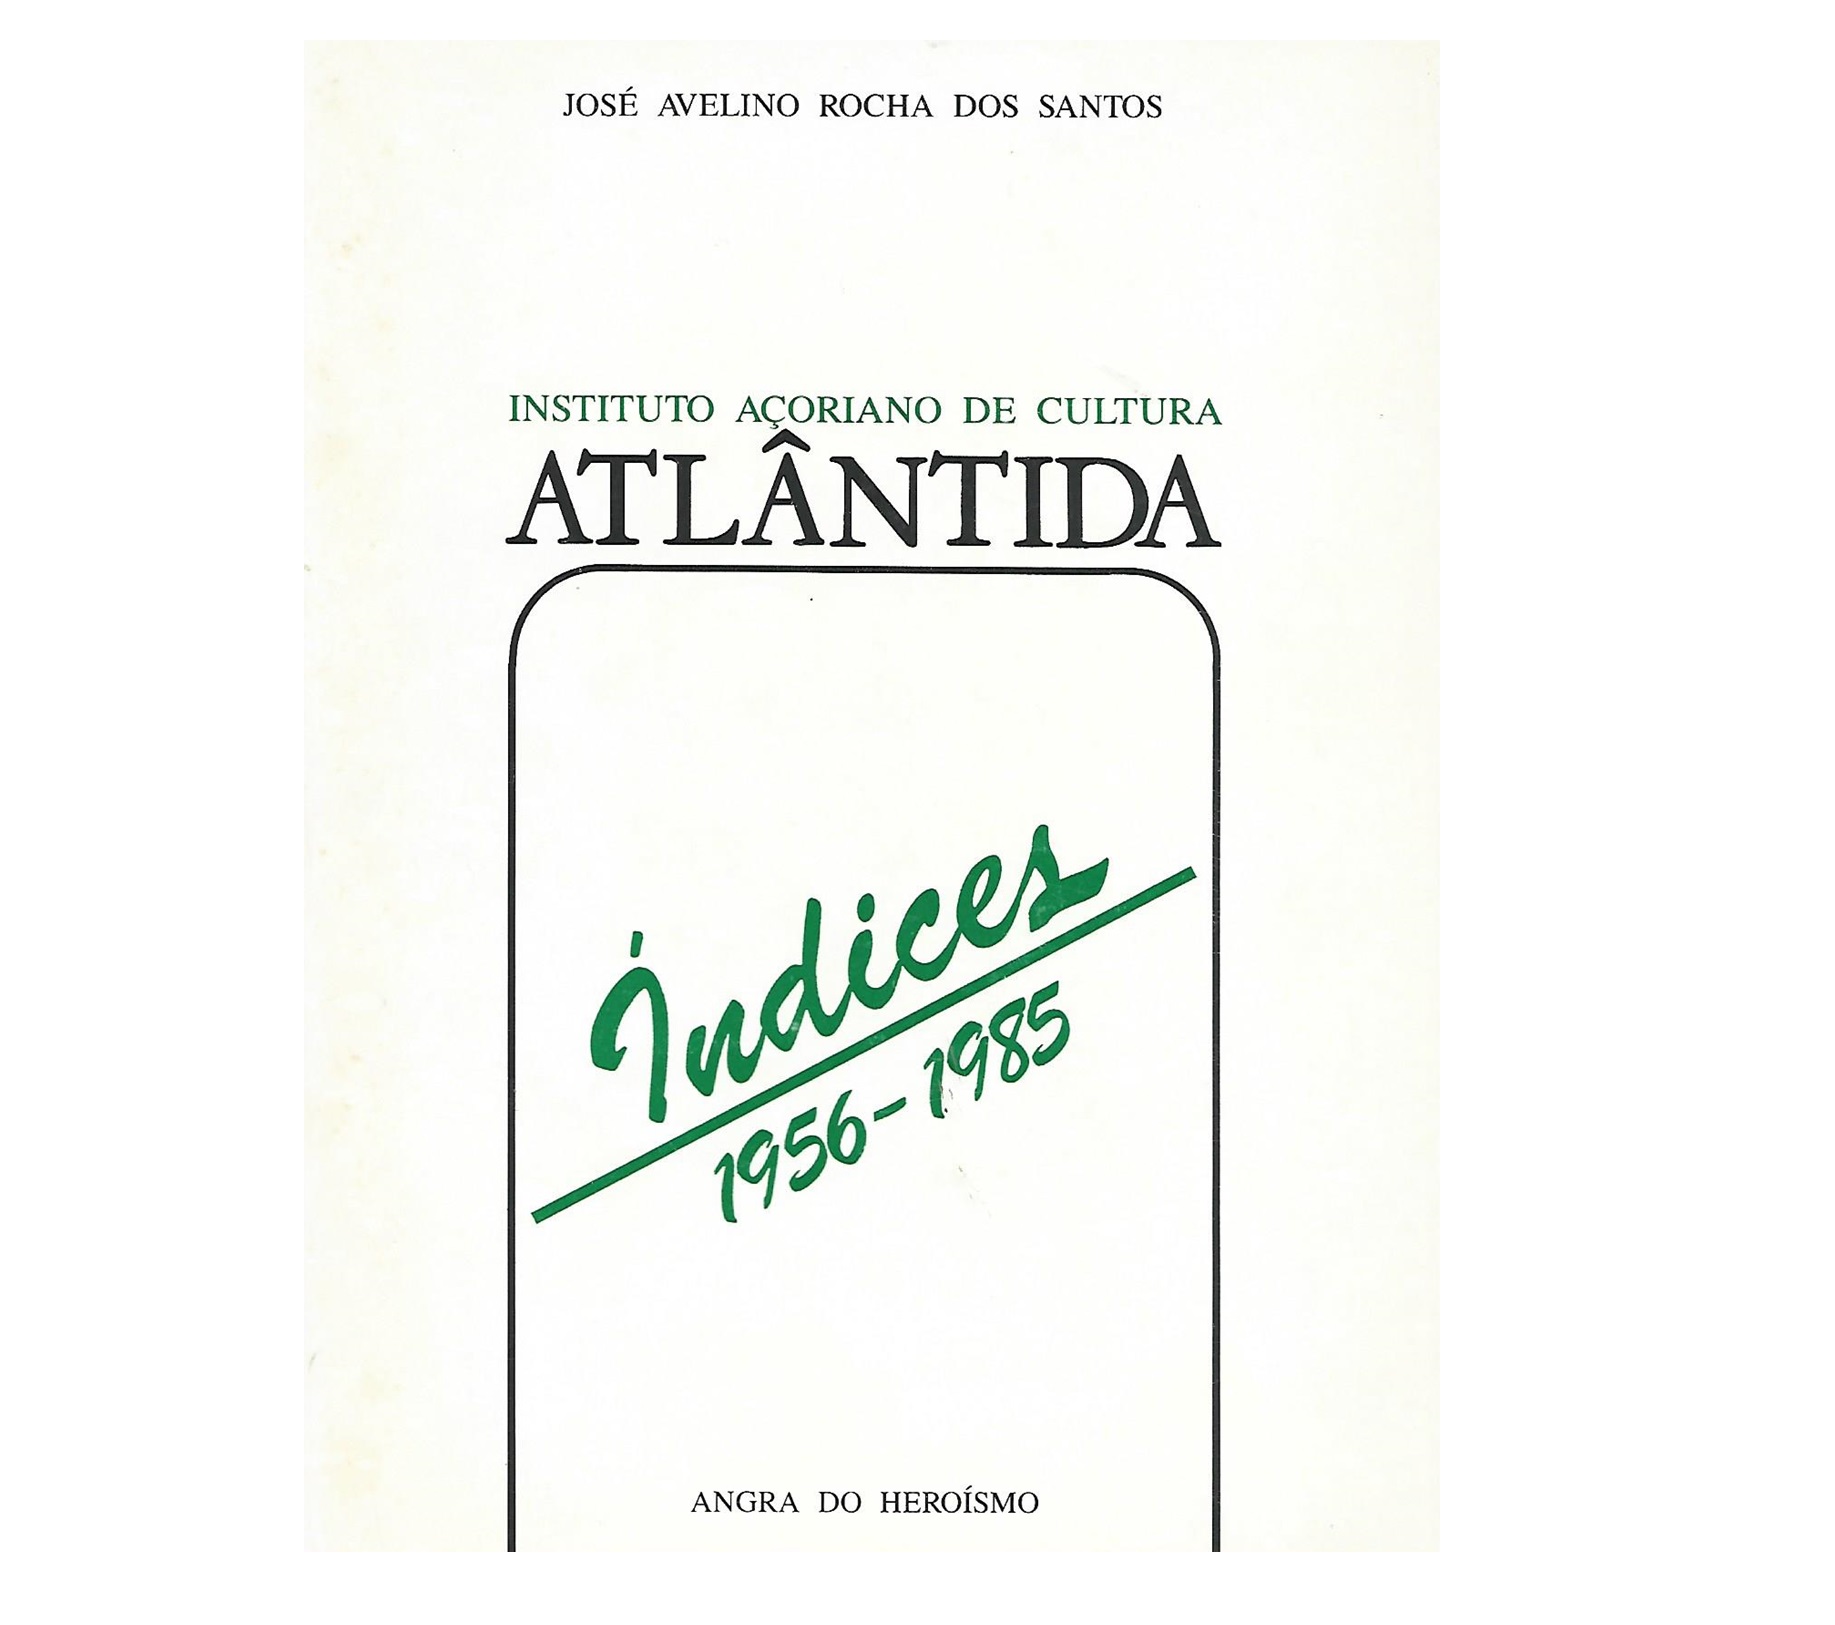 INDICES DA ATLÂNTIDA 1956-1985(VOLS I-XXX) 